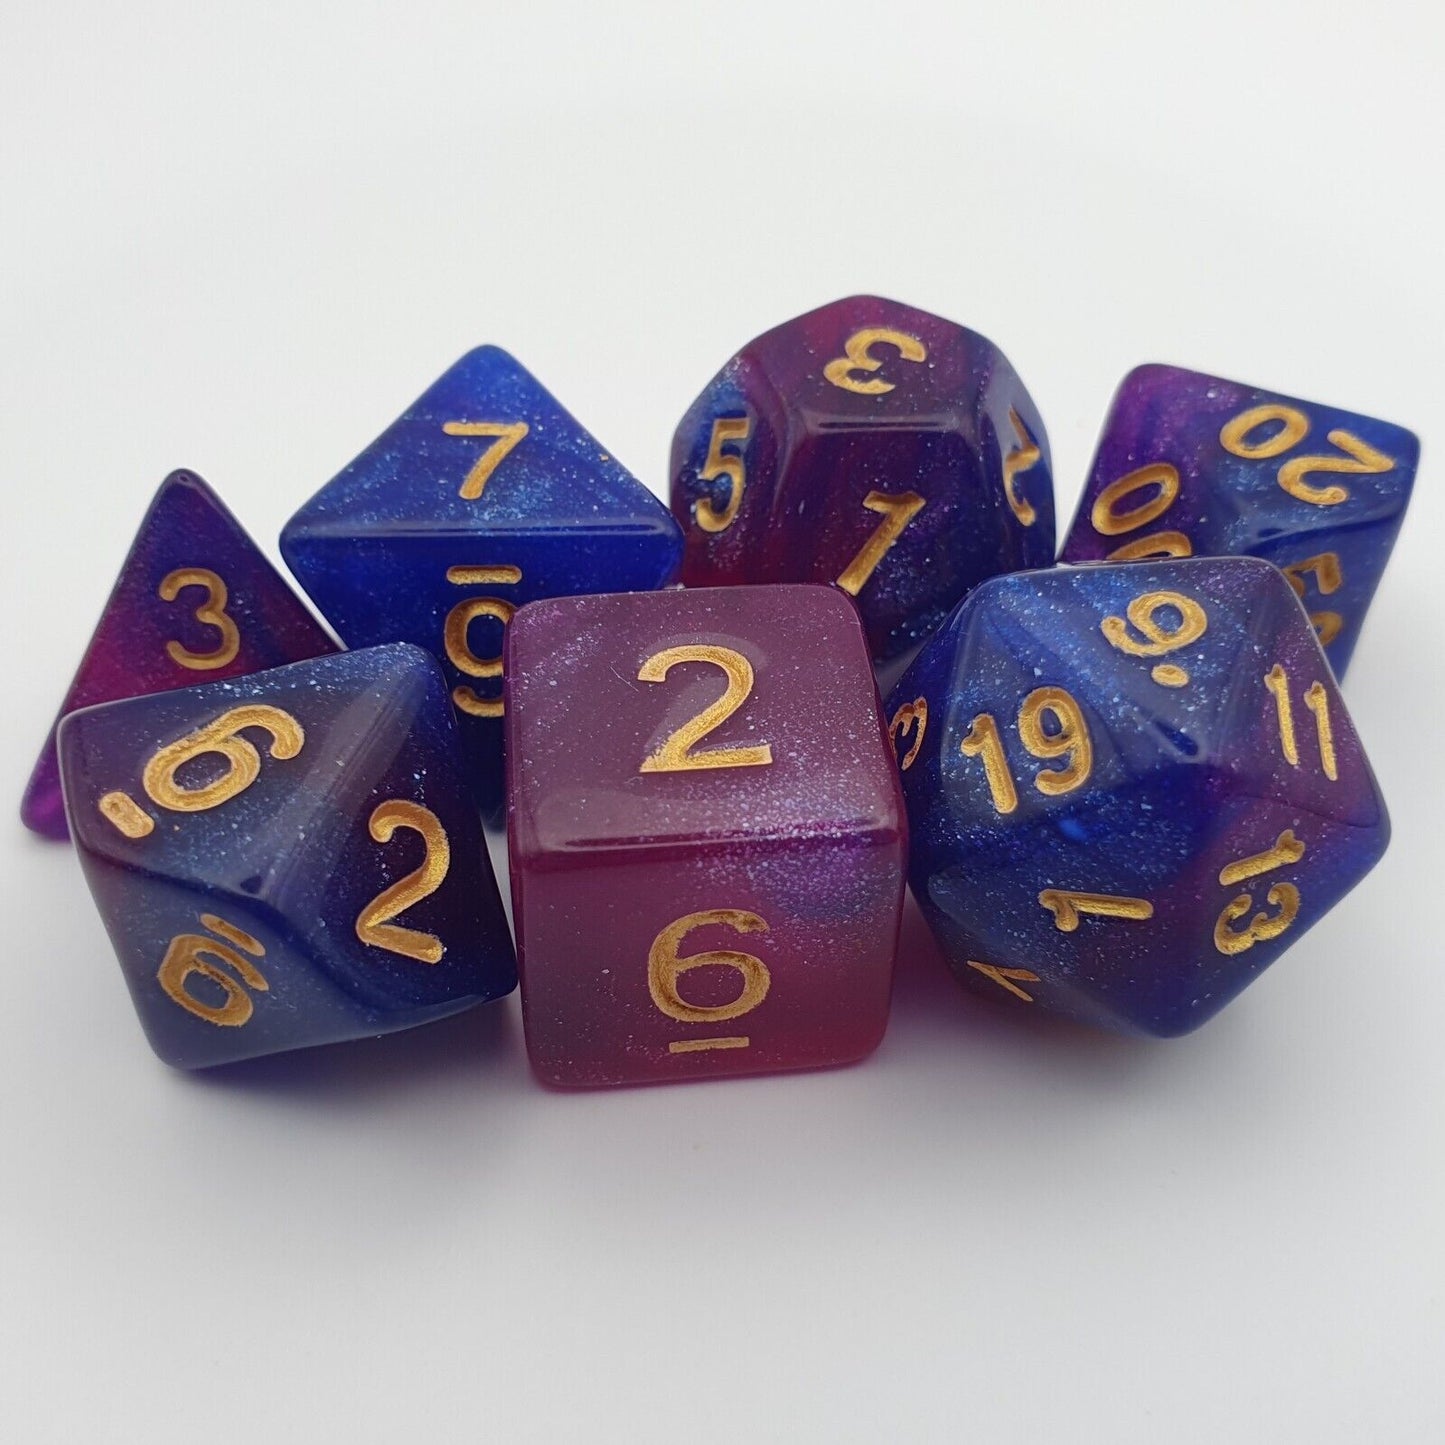 Light purple galaxy dice